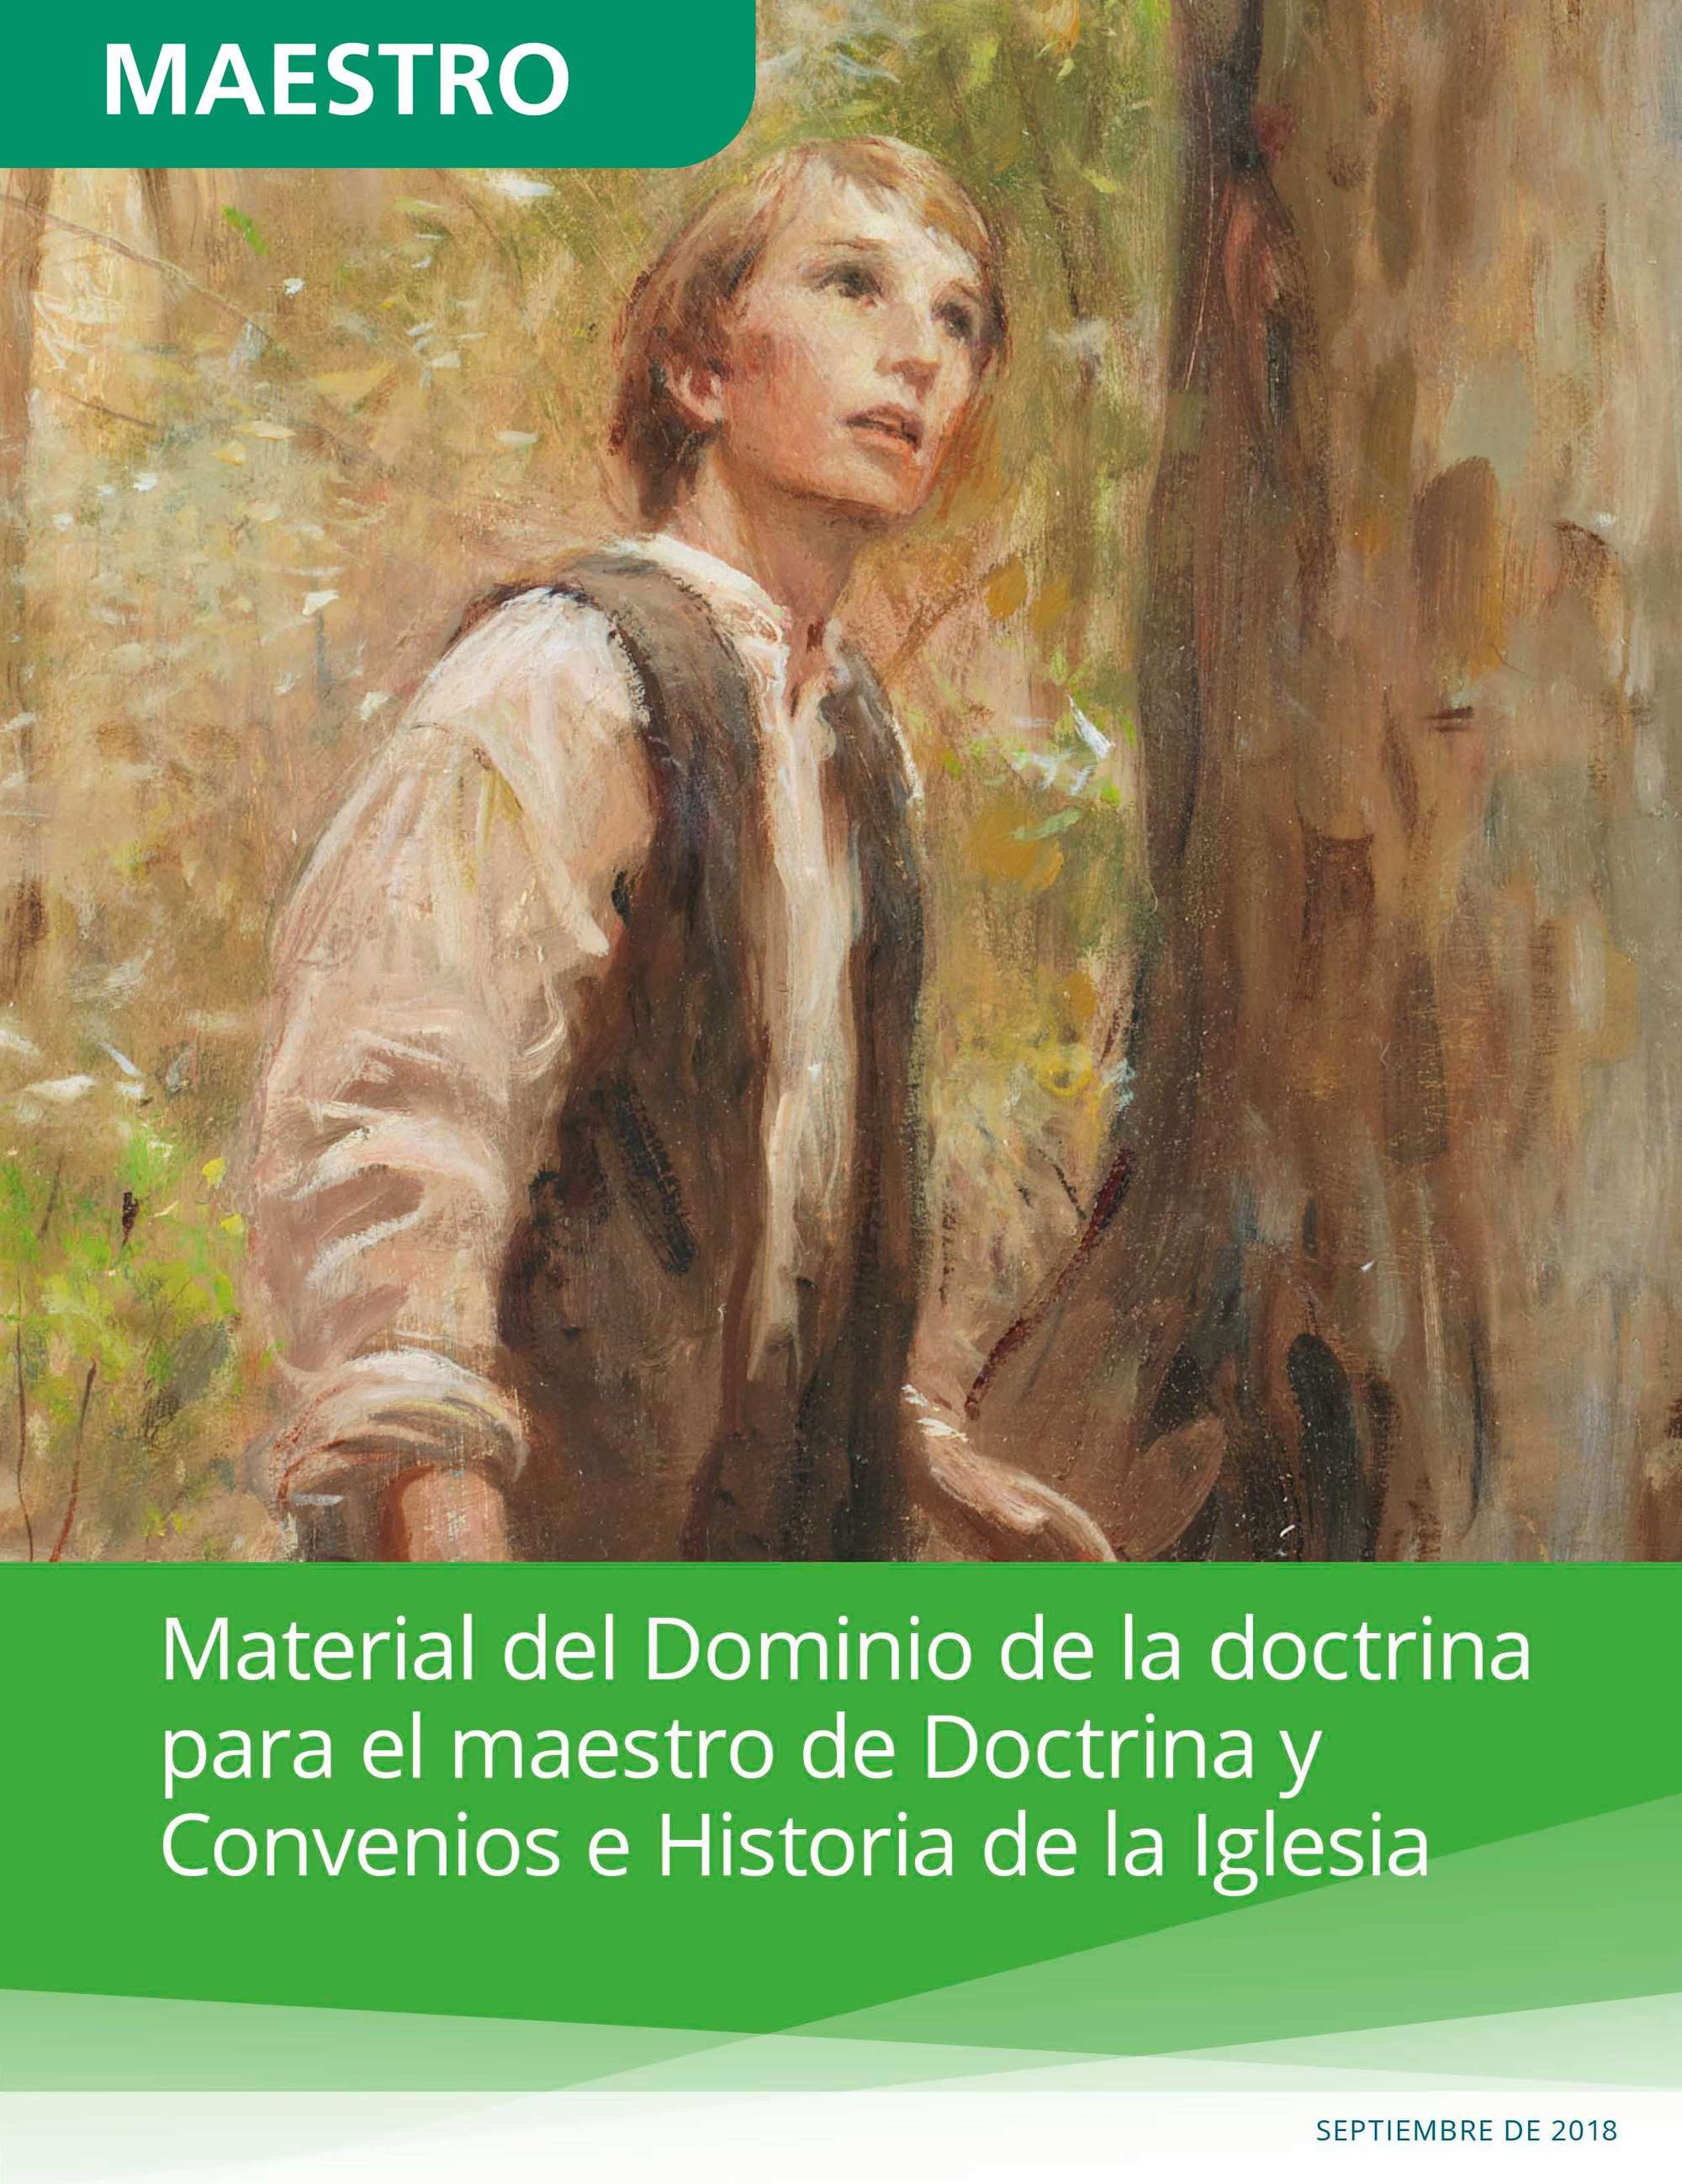 Material del Dominio de la doctrina para el maestro de Doctrina y Convenios e Historia de la Iglesia